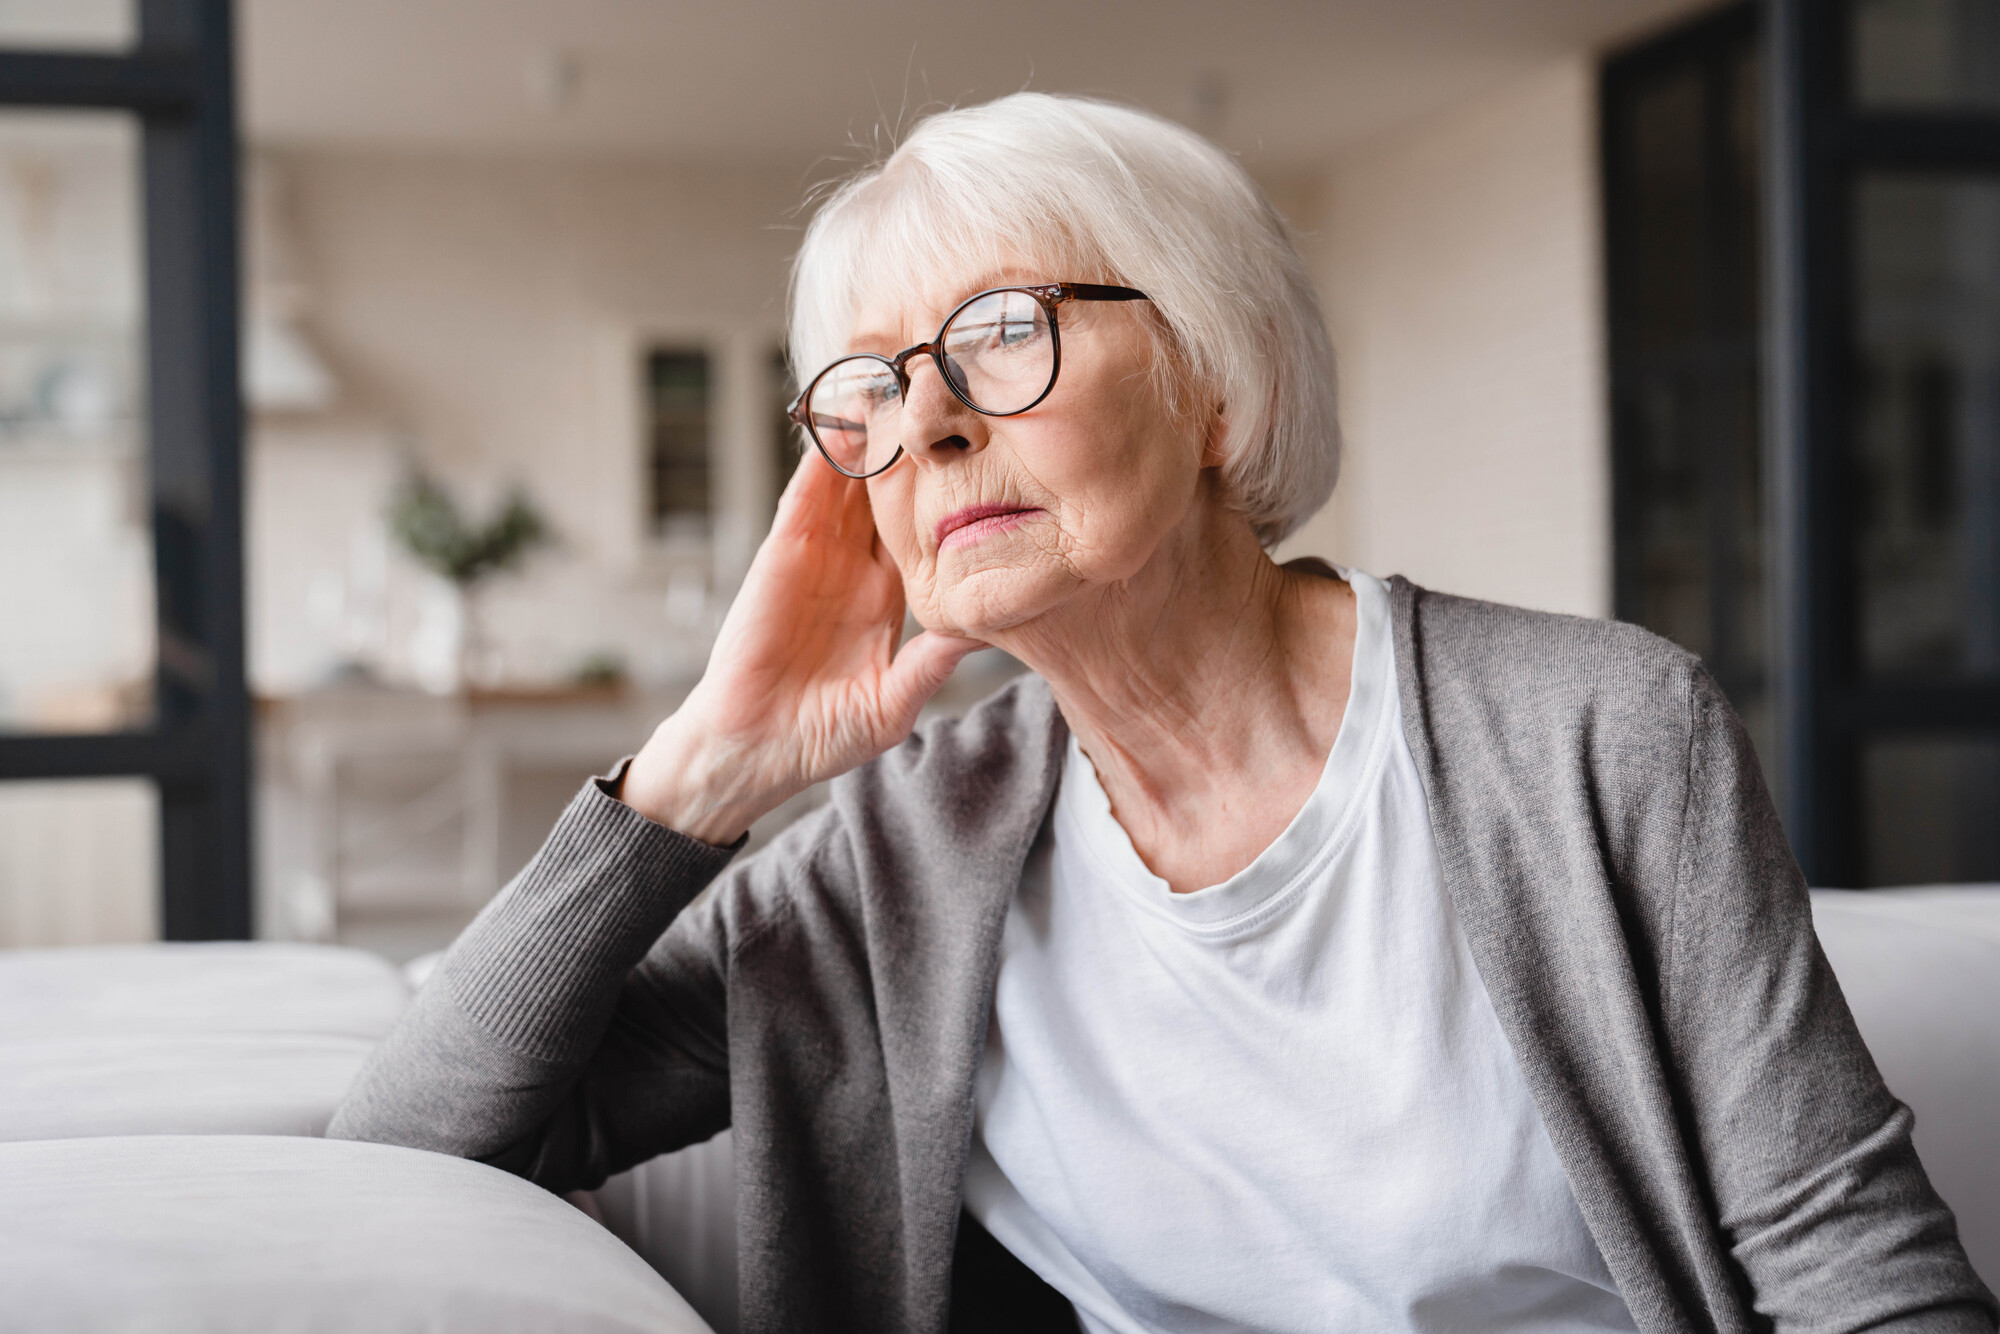 Bei älteren Menschen ist es oft nicht einfach, eine Depression festzustellen. Denn häufig klagen die Betroffenen vor allem über körperliche oder kognitive Probleme.